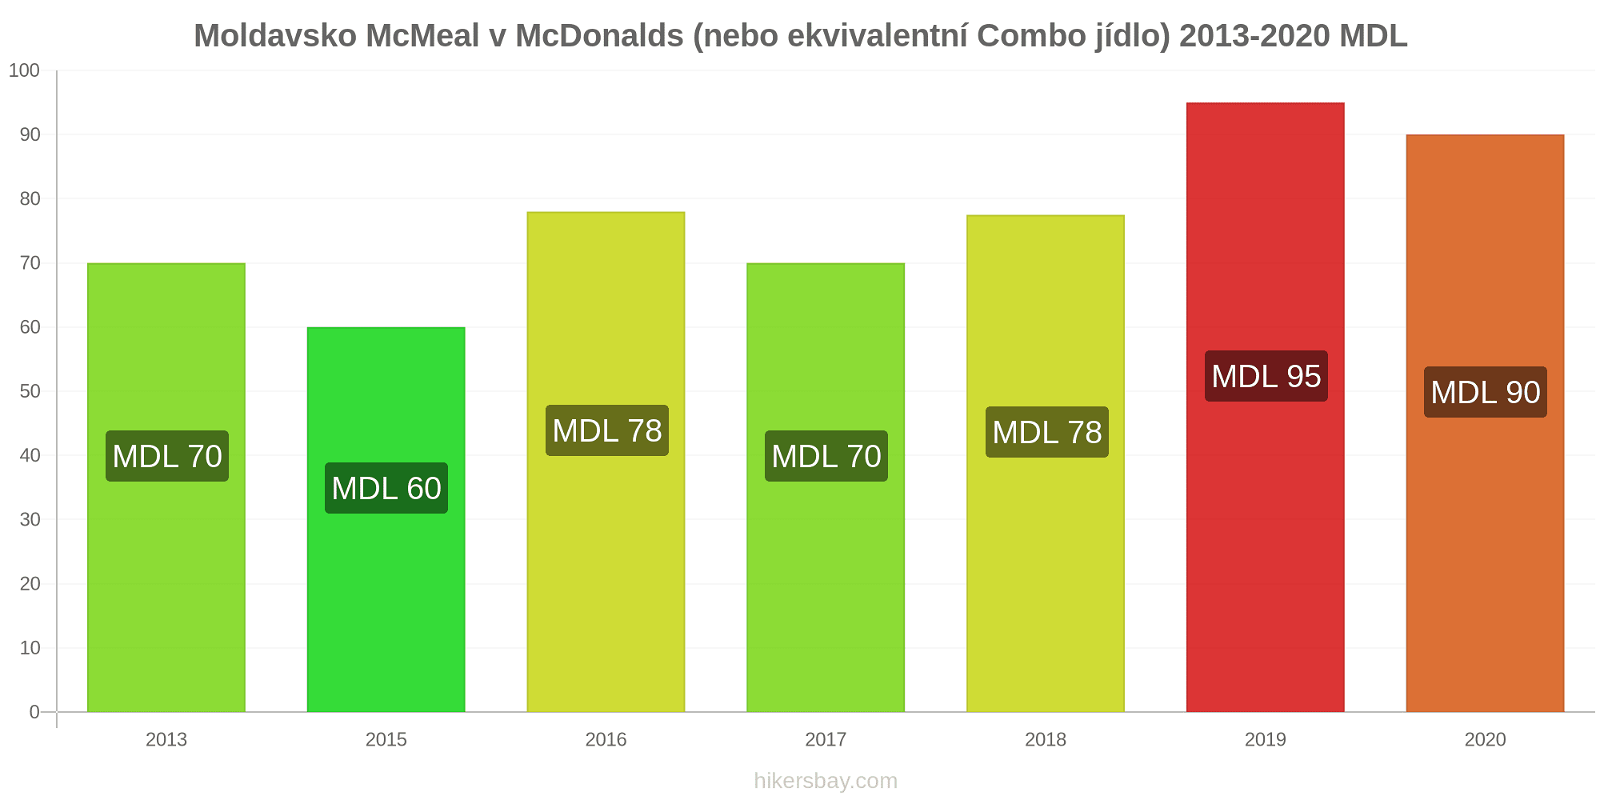 Moldavsko změny cen McMeal v McDonalds (nebo ekvivalentní Combo jídlo) hikersbay.com